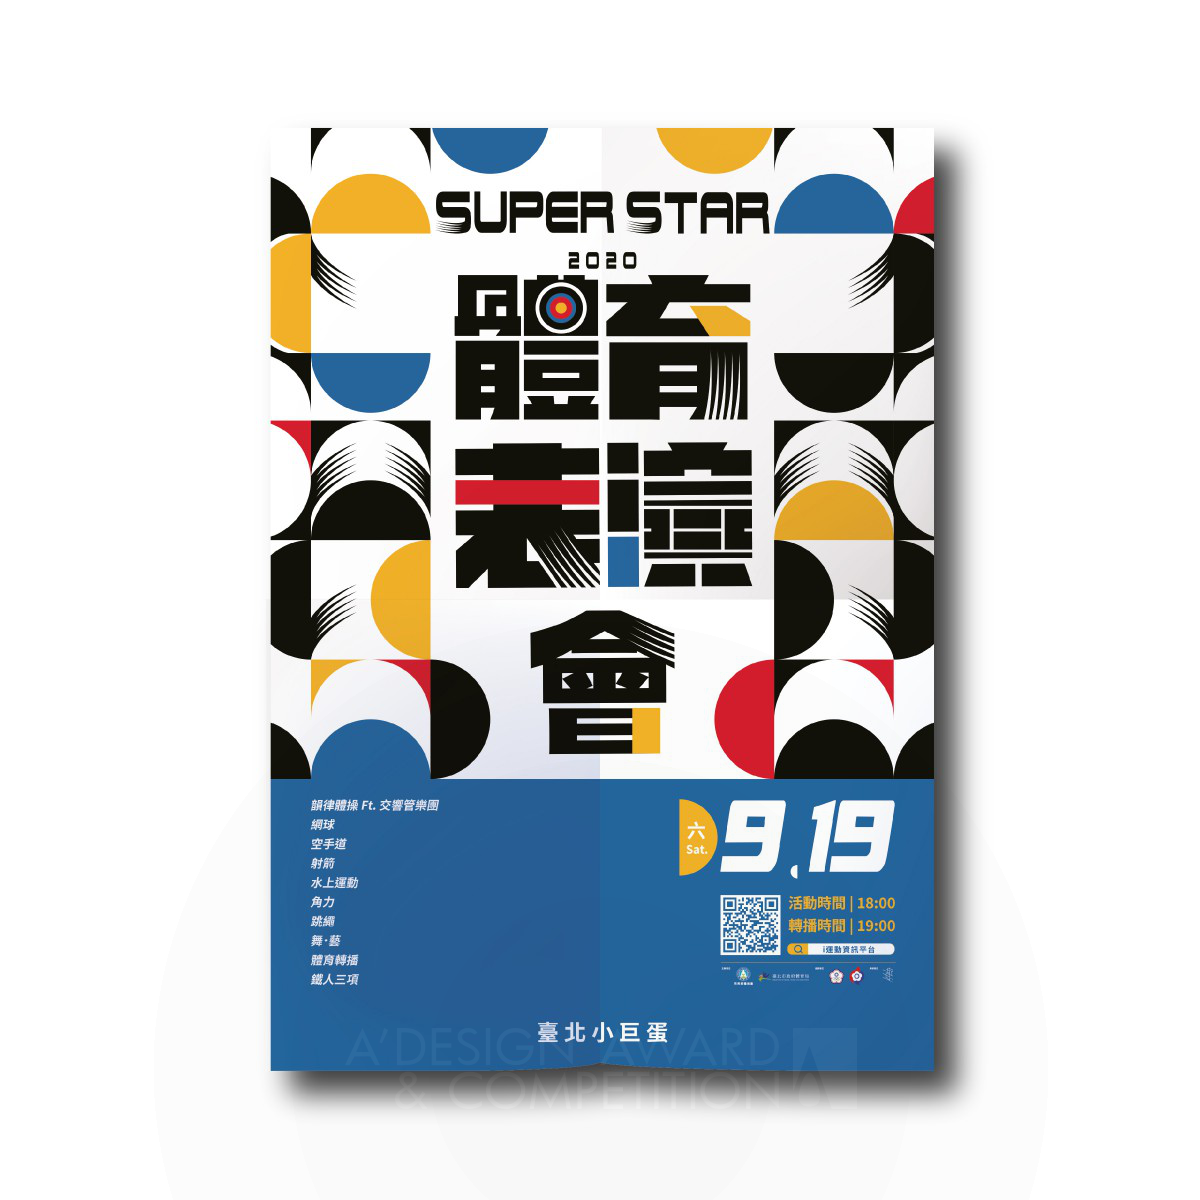 2020 Super Star: Un Evento de Rendimiento Deportivo